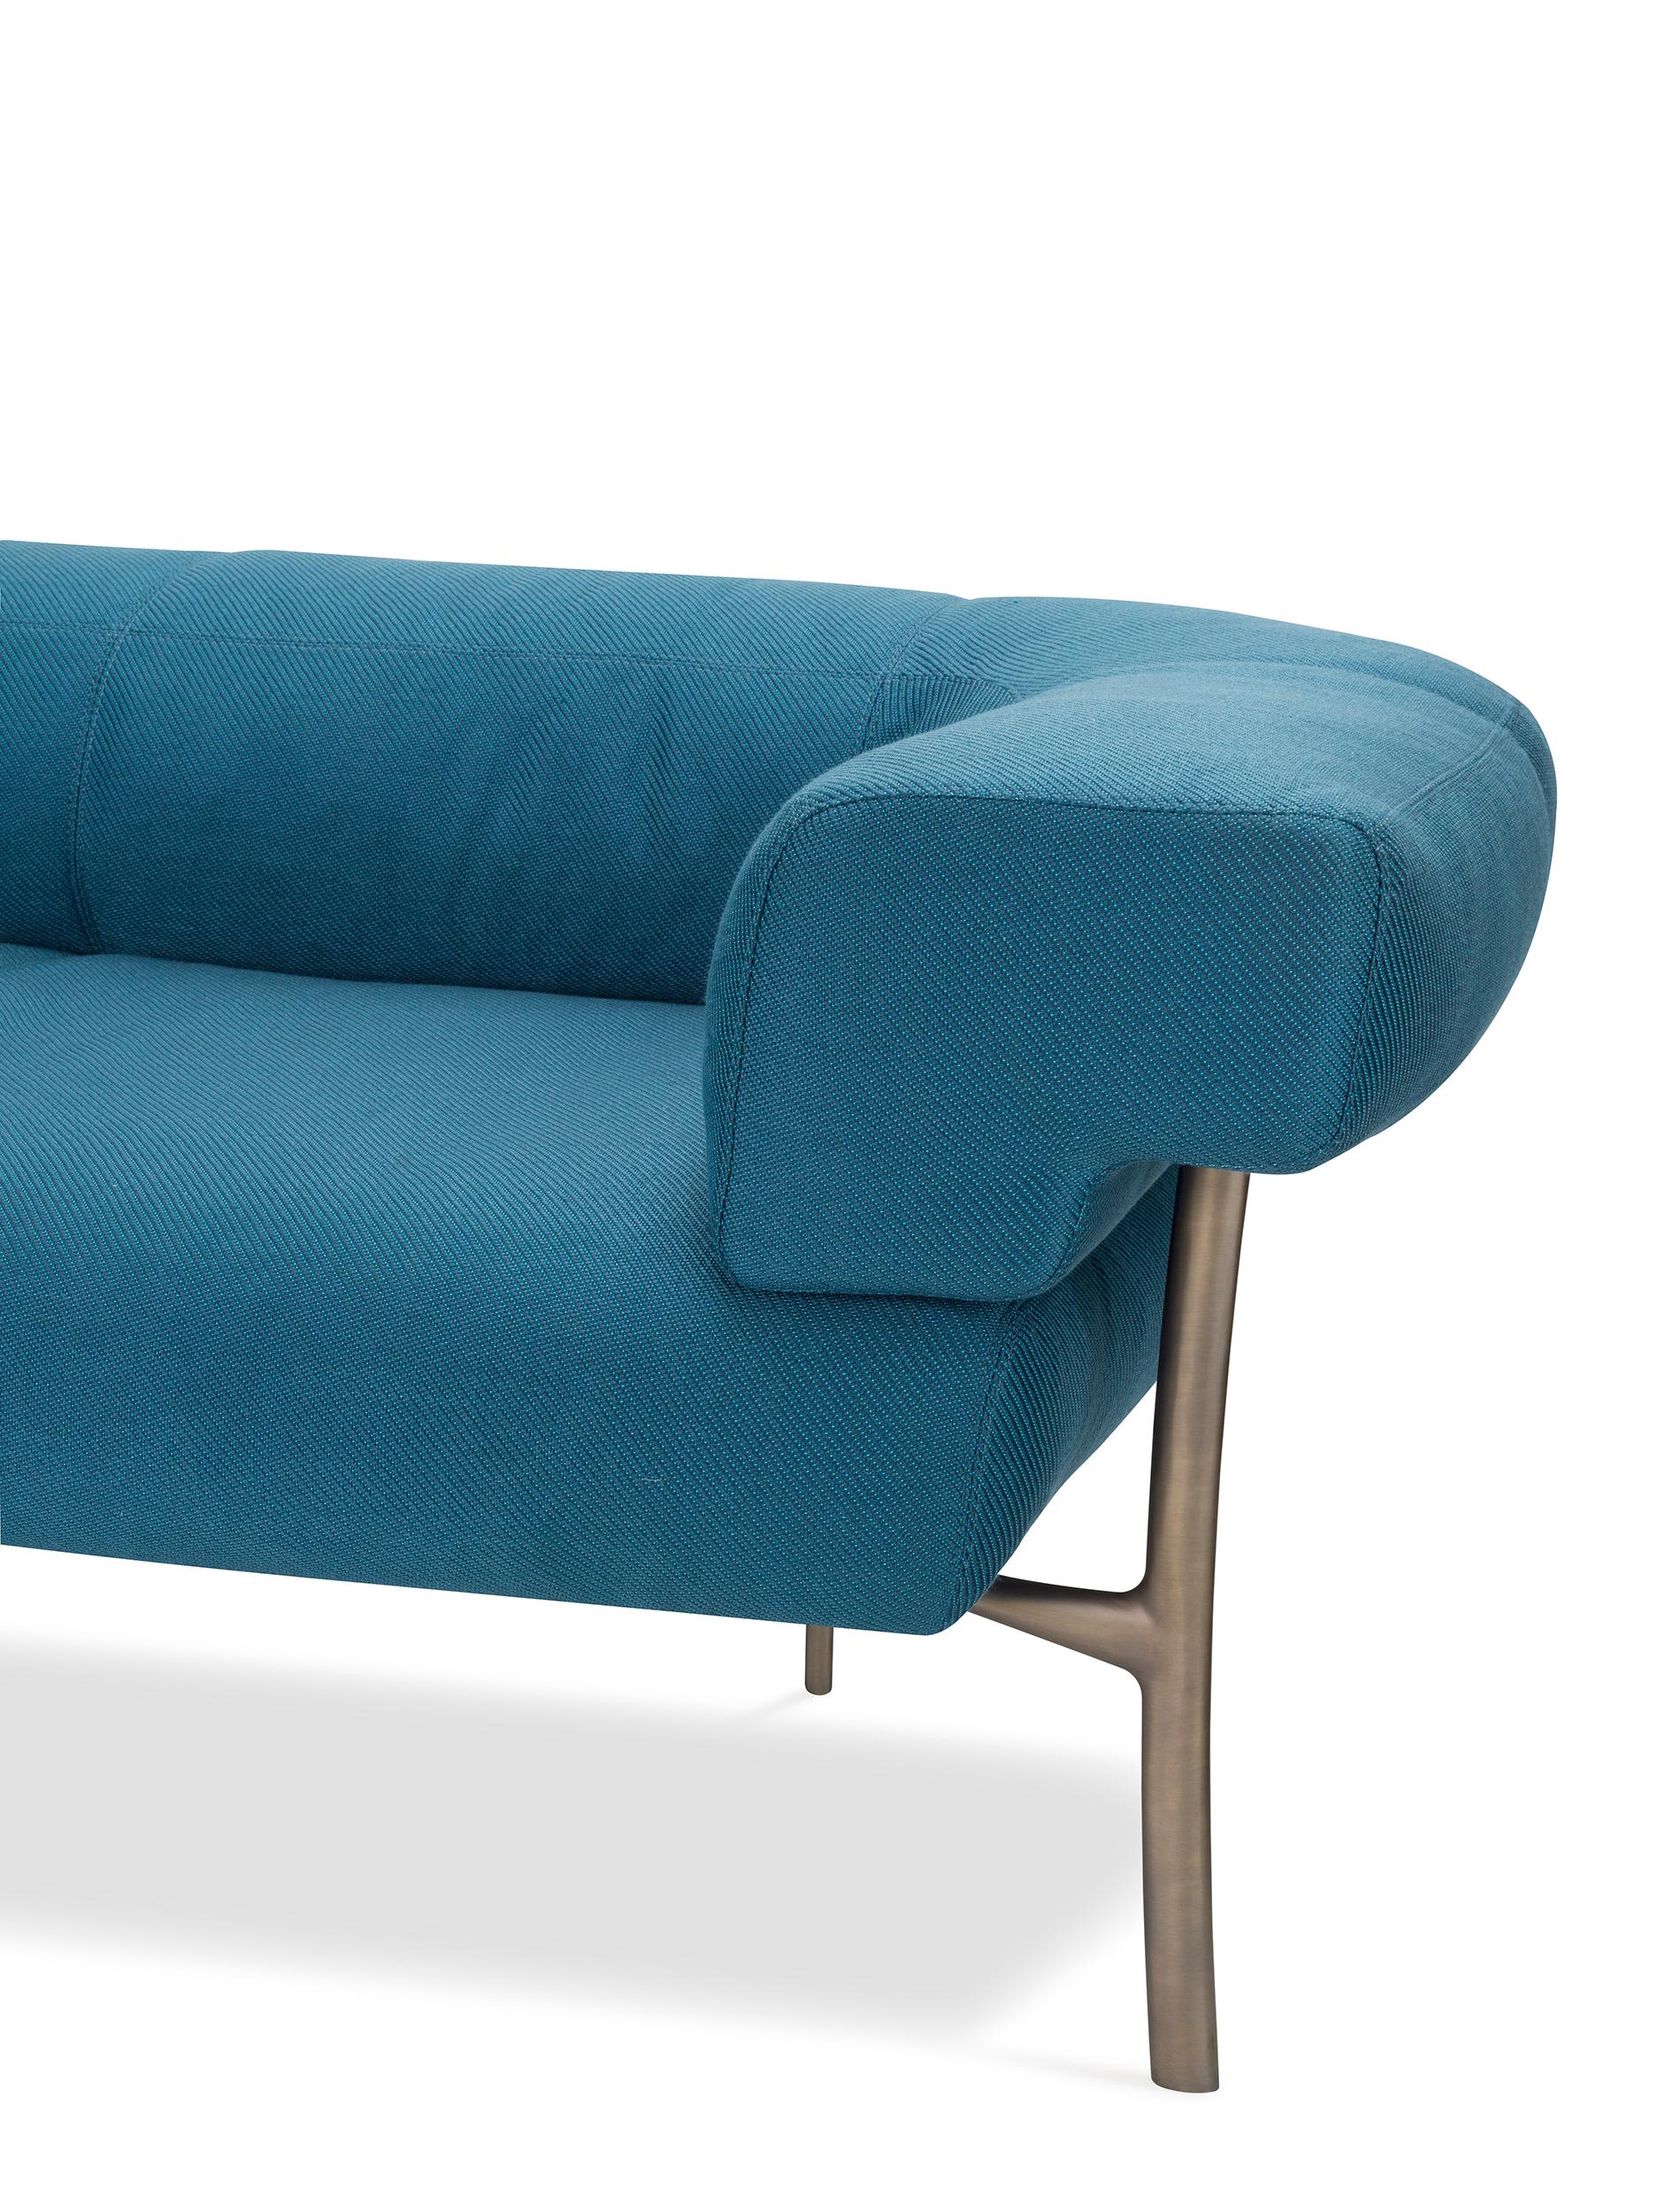 For Sale: Blue (T18007_012-500x500) Ghidini 1961 Katana 2-Seat Sofa in Fabric by Paolo Rizzatto 2